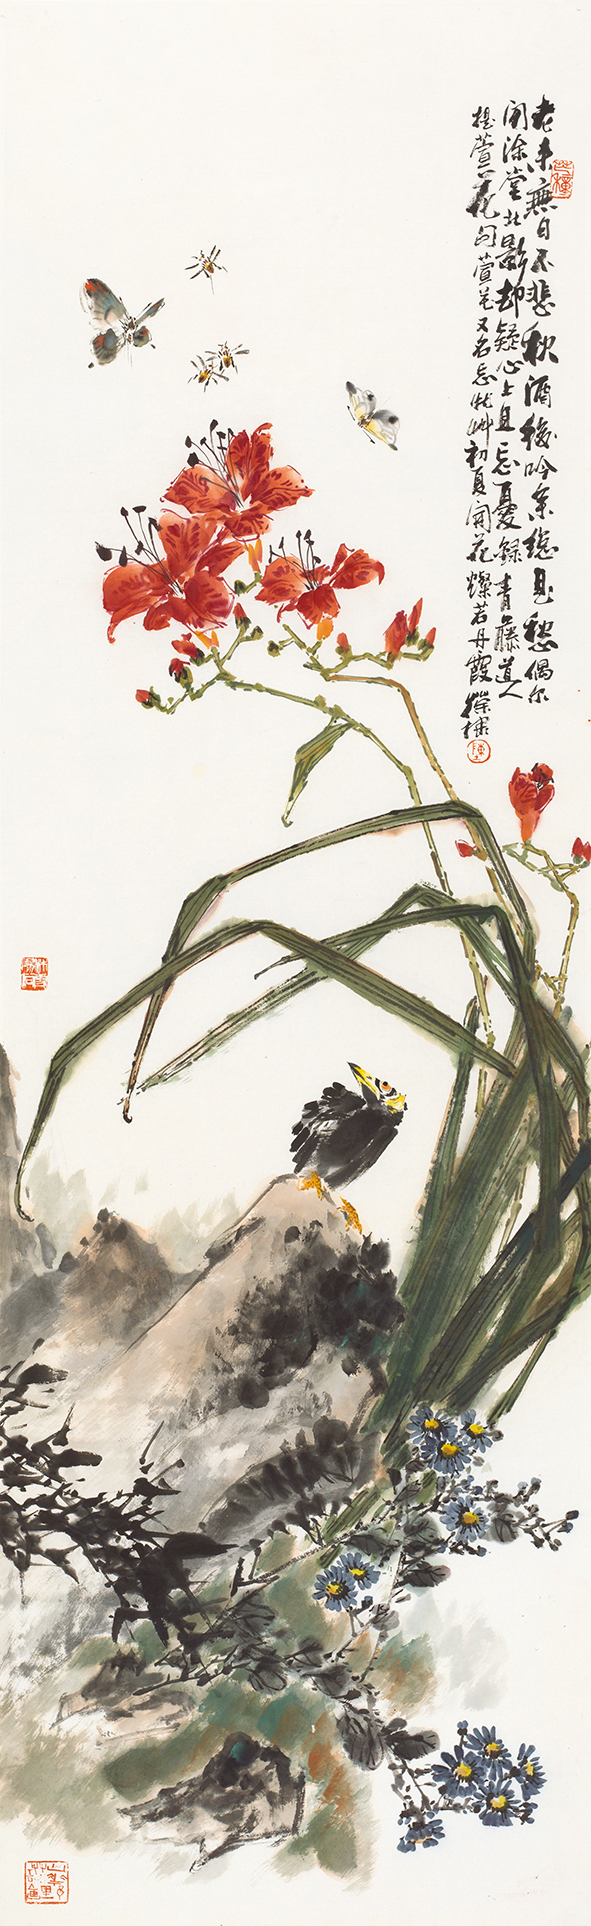 二十四节气花鸟画—9《芒种》